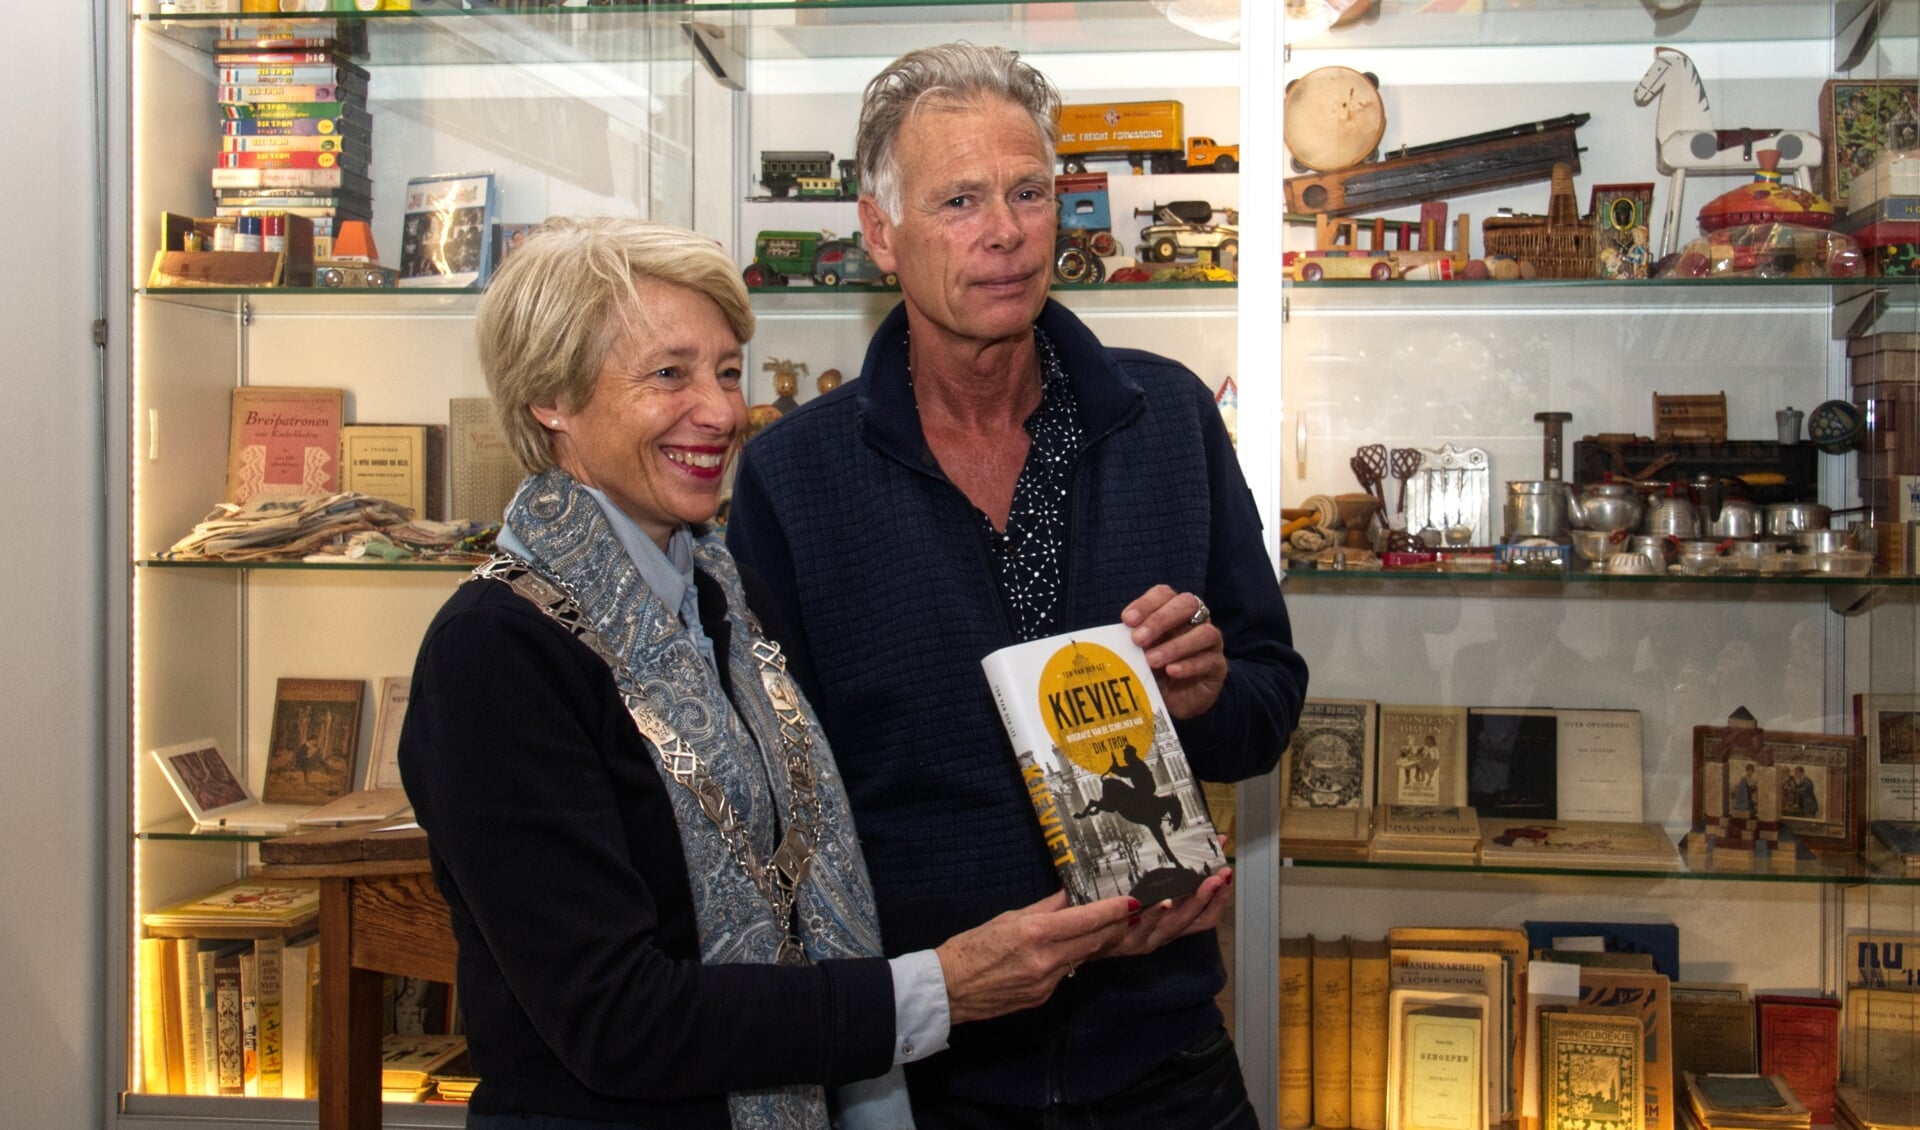 Burgemeester Lieke  Sievers toont met auteur Ton van der Lee de biografie over C. Joh. Kieviet.